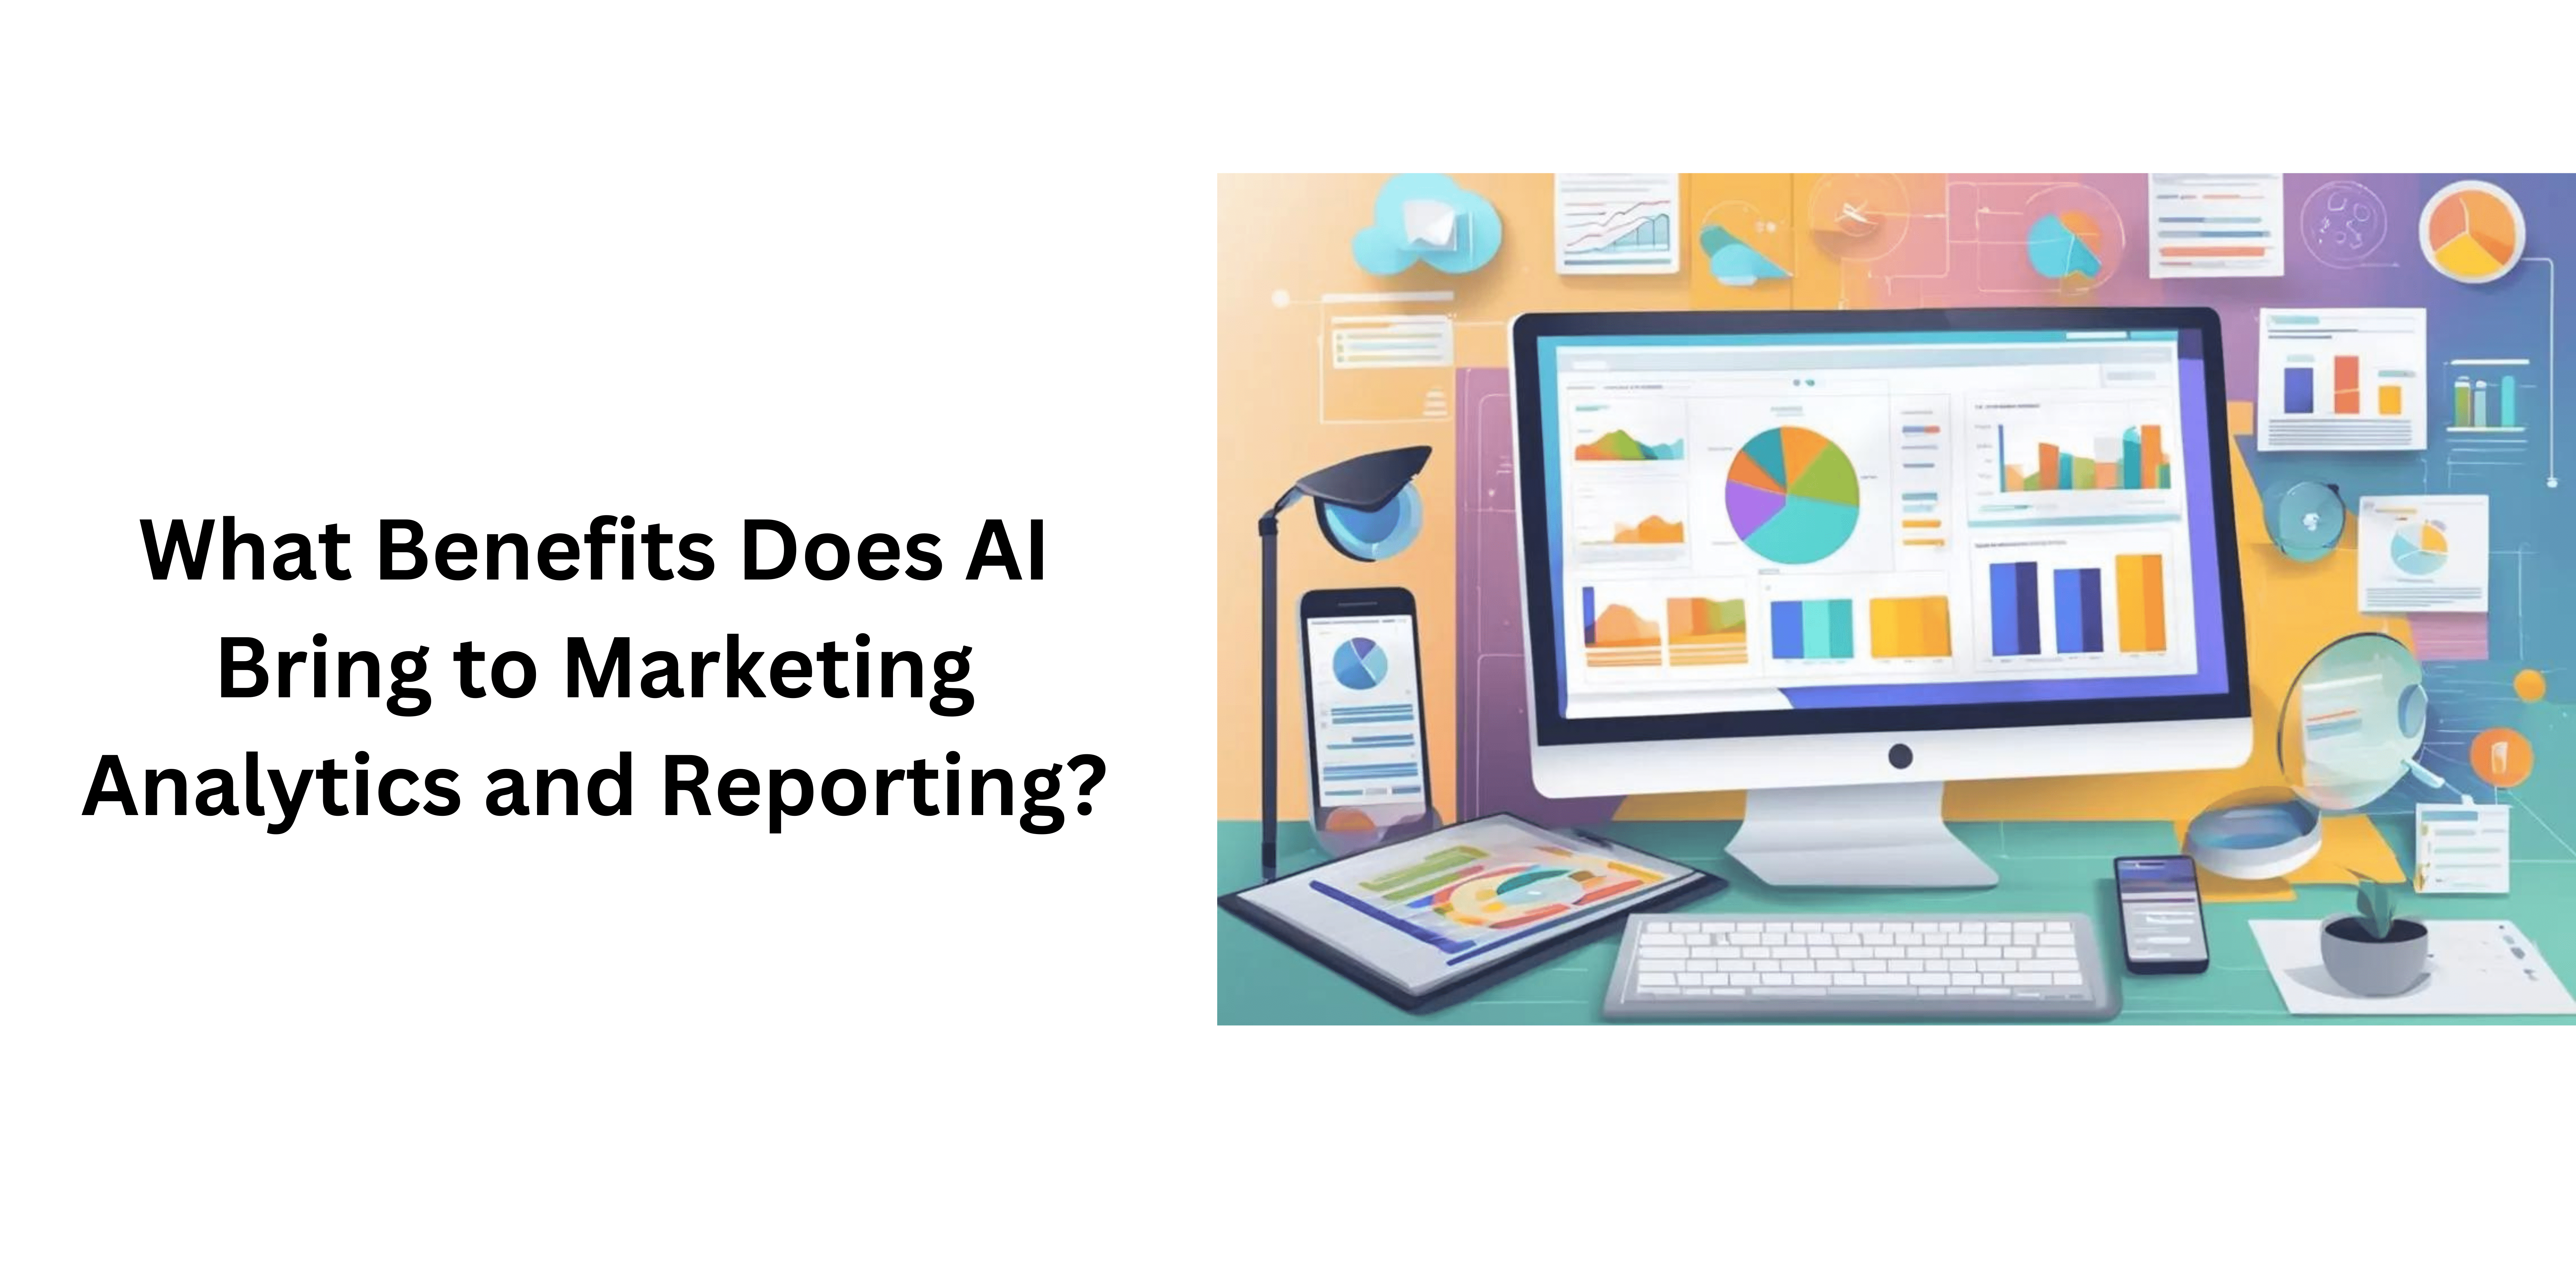 Marketing Analytics and Reporting